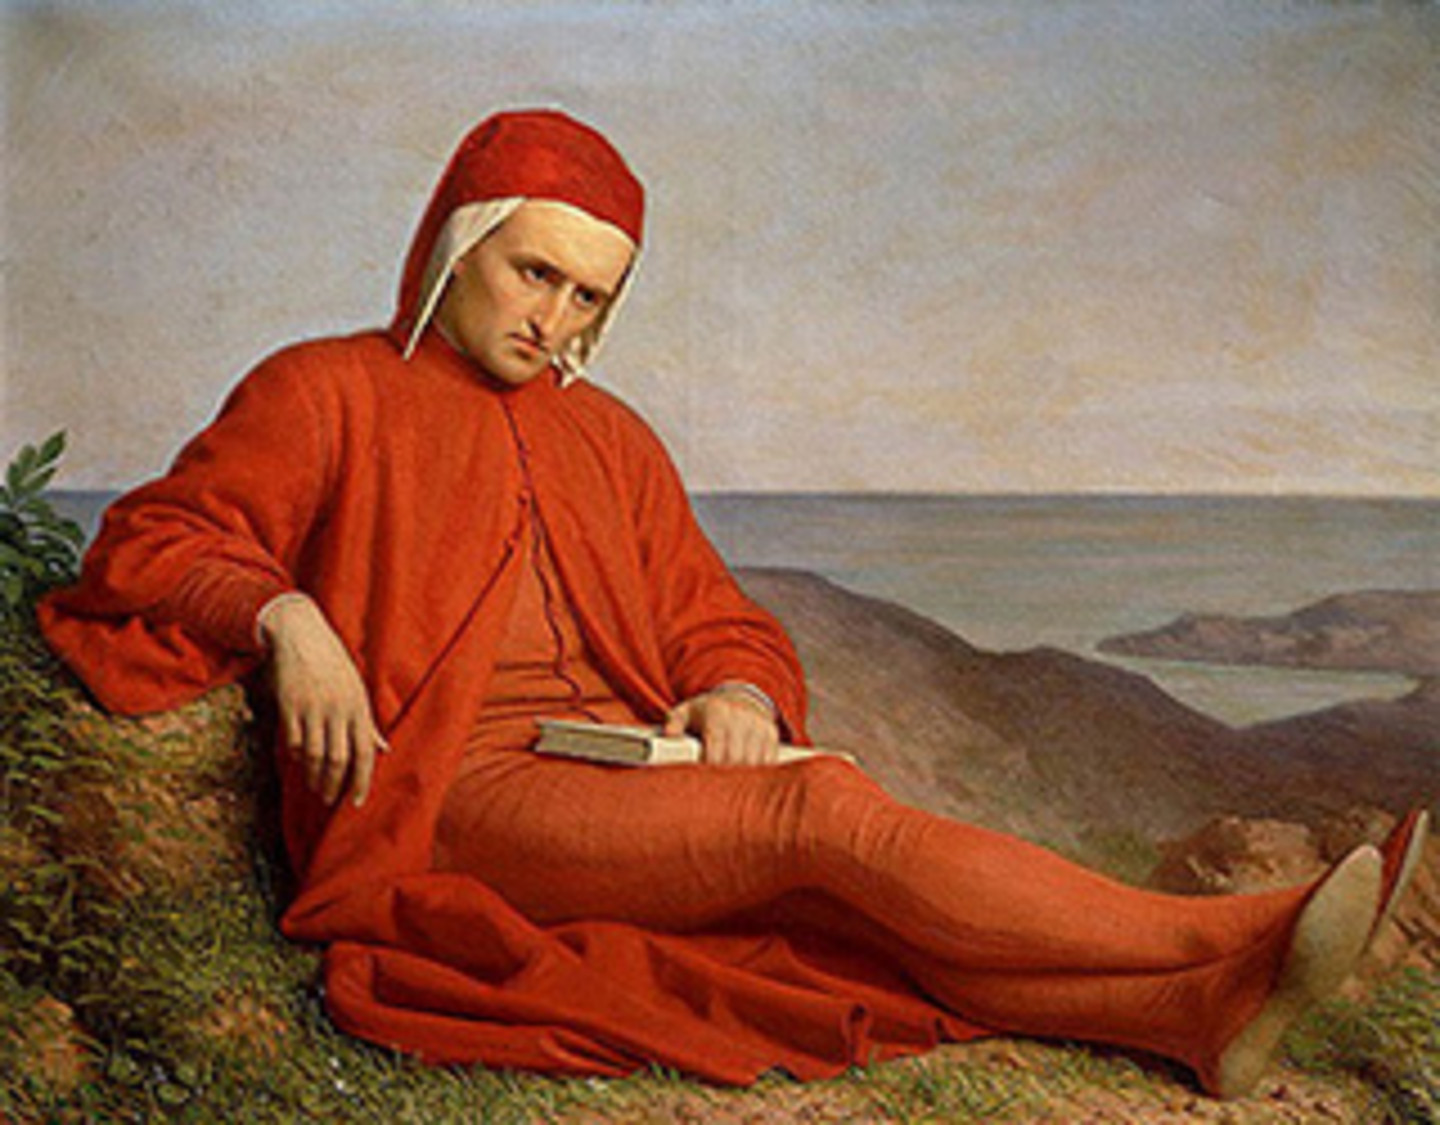 Ein Ganzkörper-Porträt von Dante Alighieri mit dem Titel "Dante in esilio" ; circa aus dem Jahr 1860 ; Dante sitzt angelehnt an einen Felsen auf dem Boden mit einem Buch in der Hand und Meer im Hintergrund.